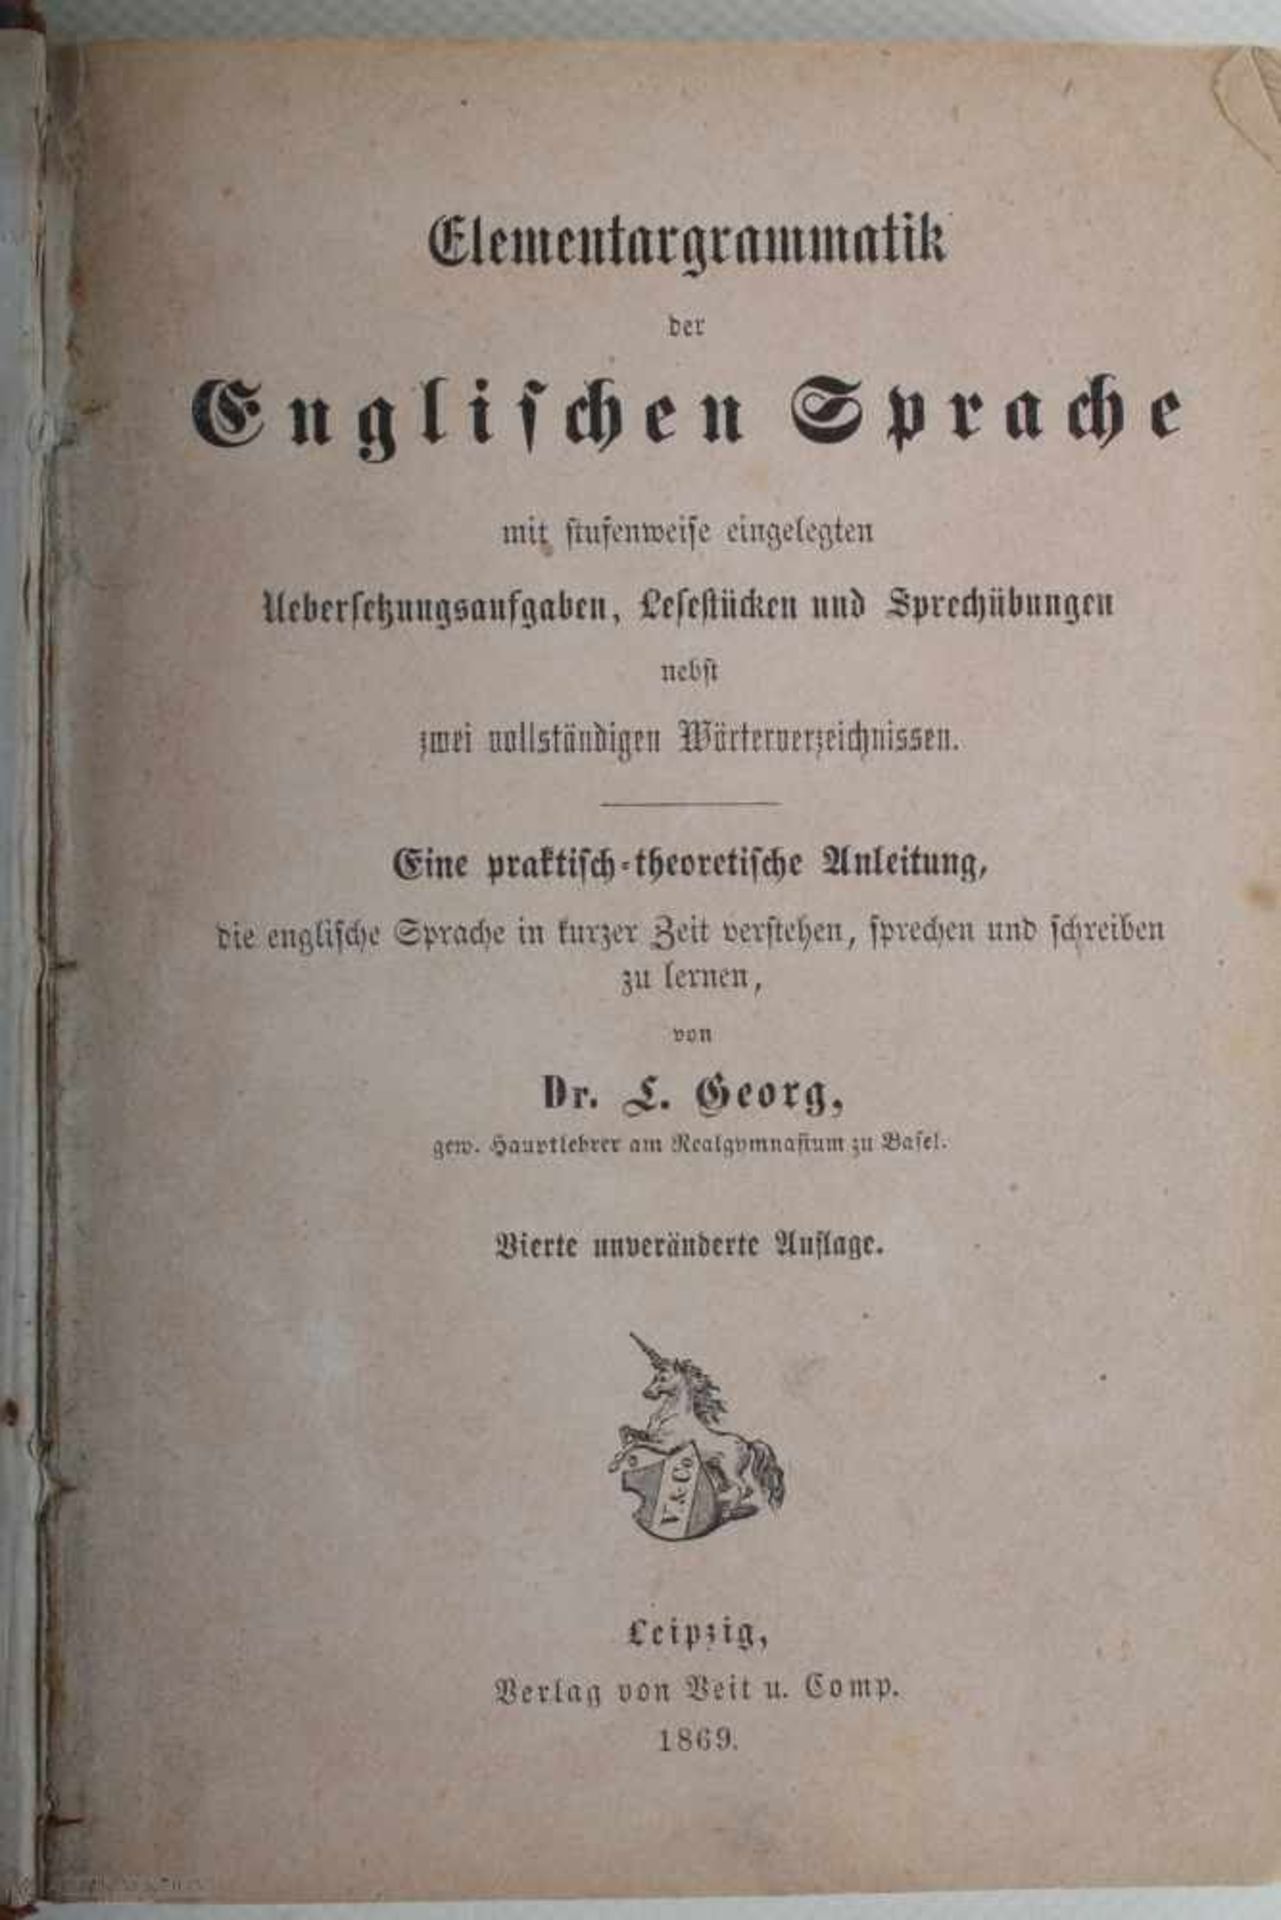 1869 Leipzig, Veit et Comp., Elementargrammatik Der Englischen Sprache: Mit Stufenweise